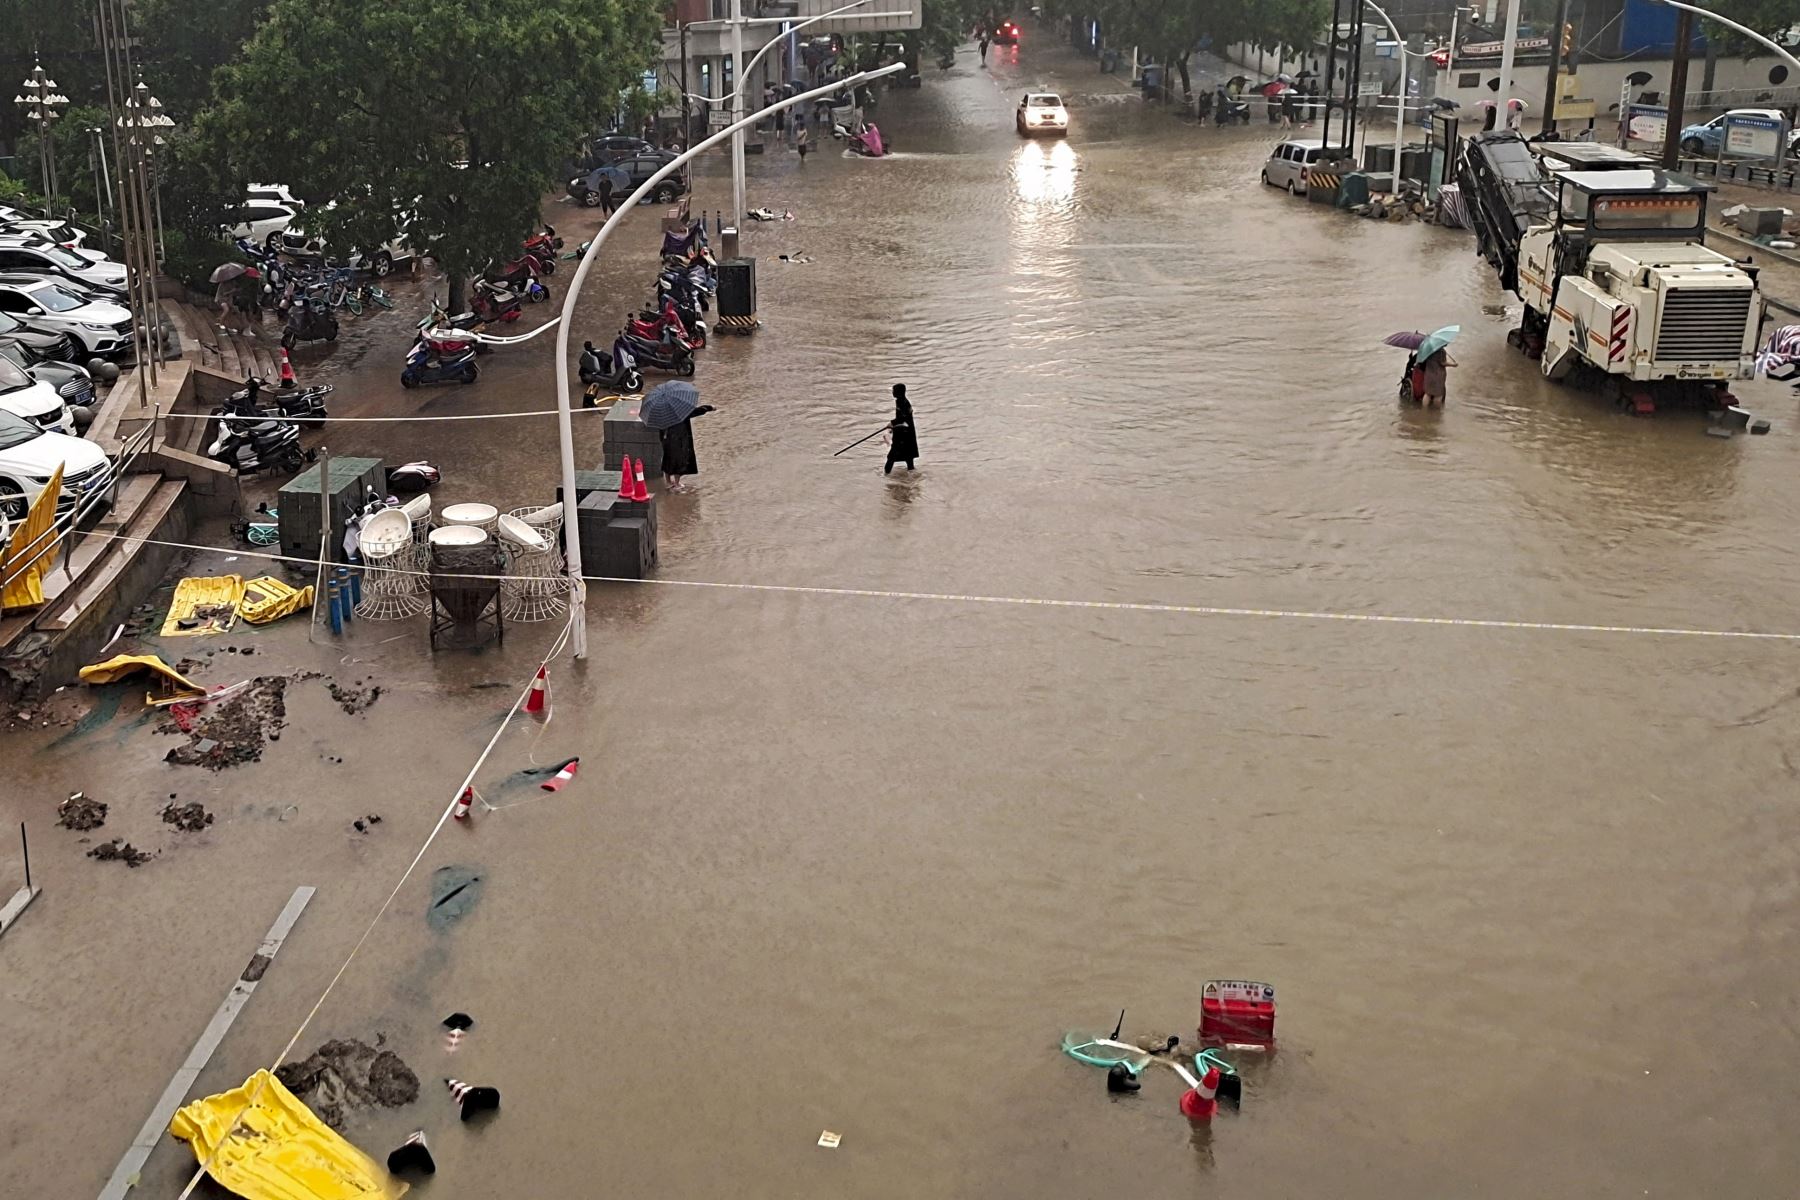 La inundación se observa a lo largo de la calle después de las fuertes lluvias en Zhengzhou, en la provincia de Henan, en China. Foto: AFP